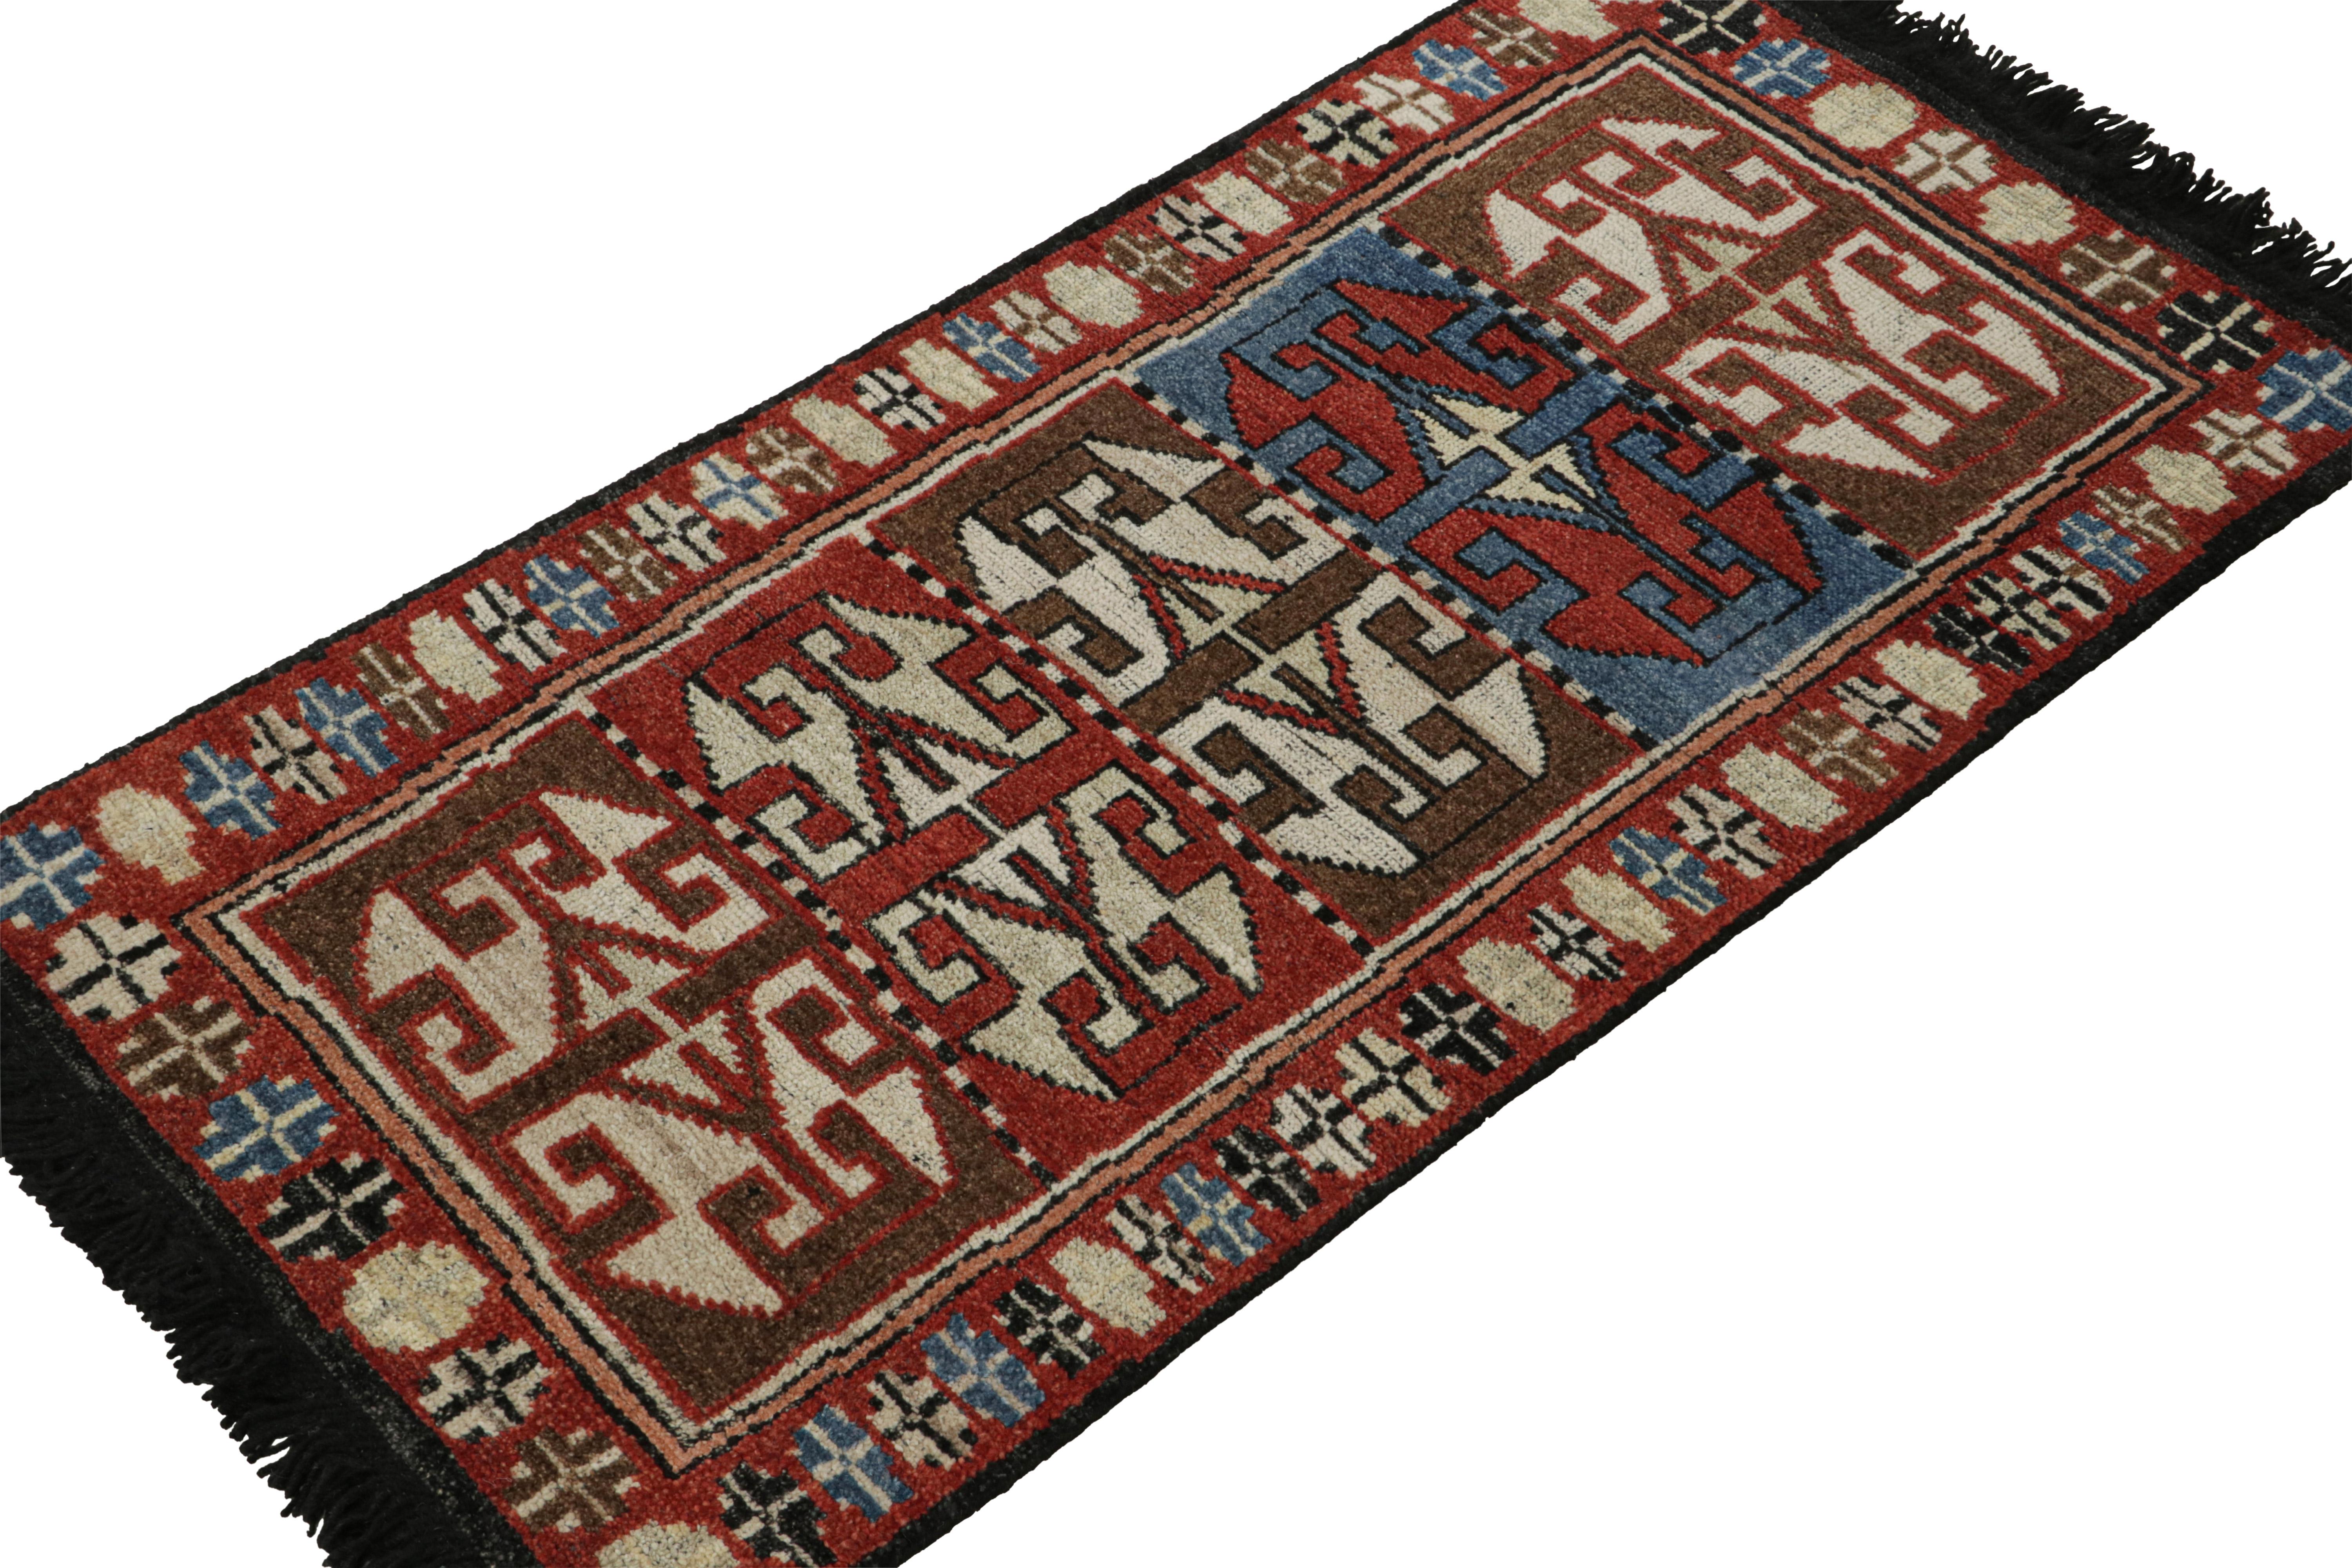 Ce tapis 2x4 est une nouvelle entrée grandiose dans la collection classique personnalisée Burano de Rug & Kilim. Noué à la main en laine.

Sur le design

Ce tapis présente des motifs géométriques tirés de motifs primitivistes et nomades dans des